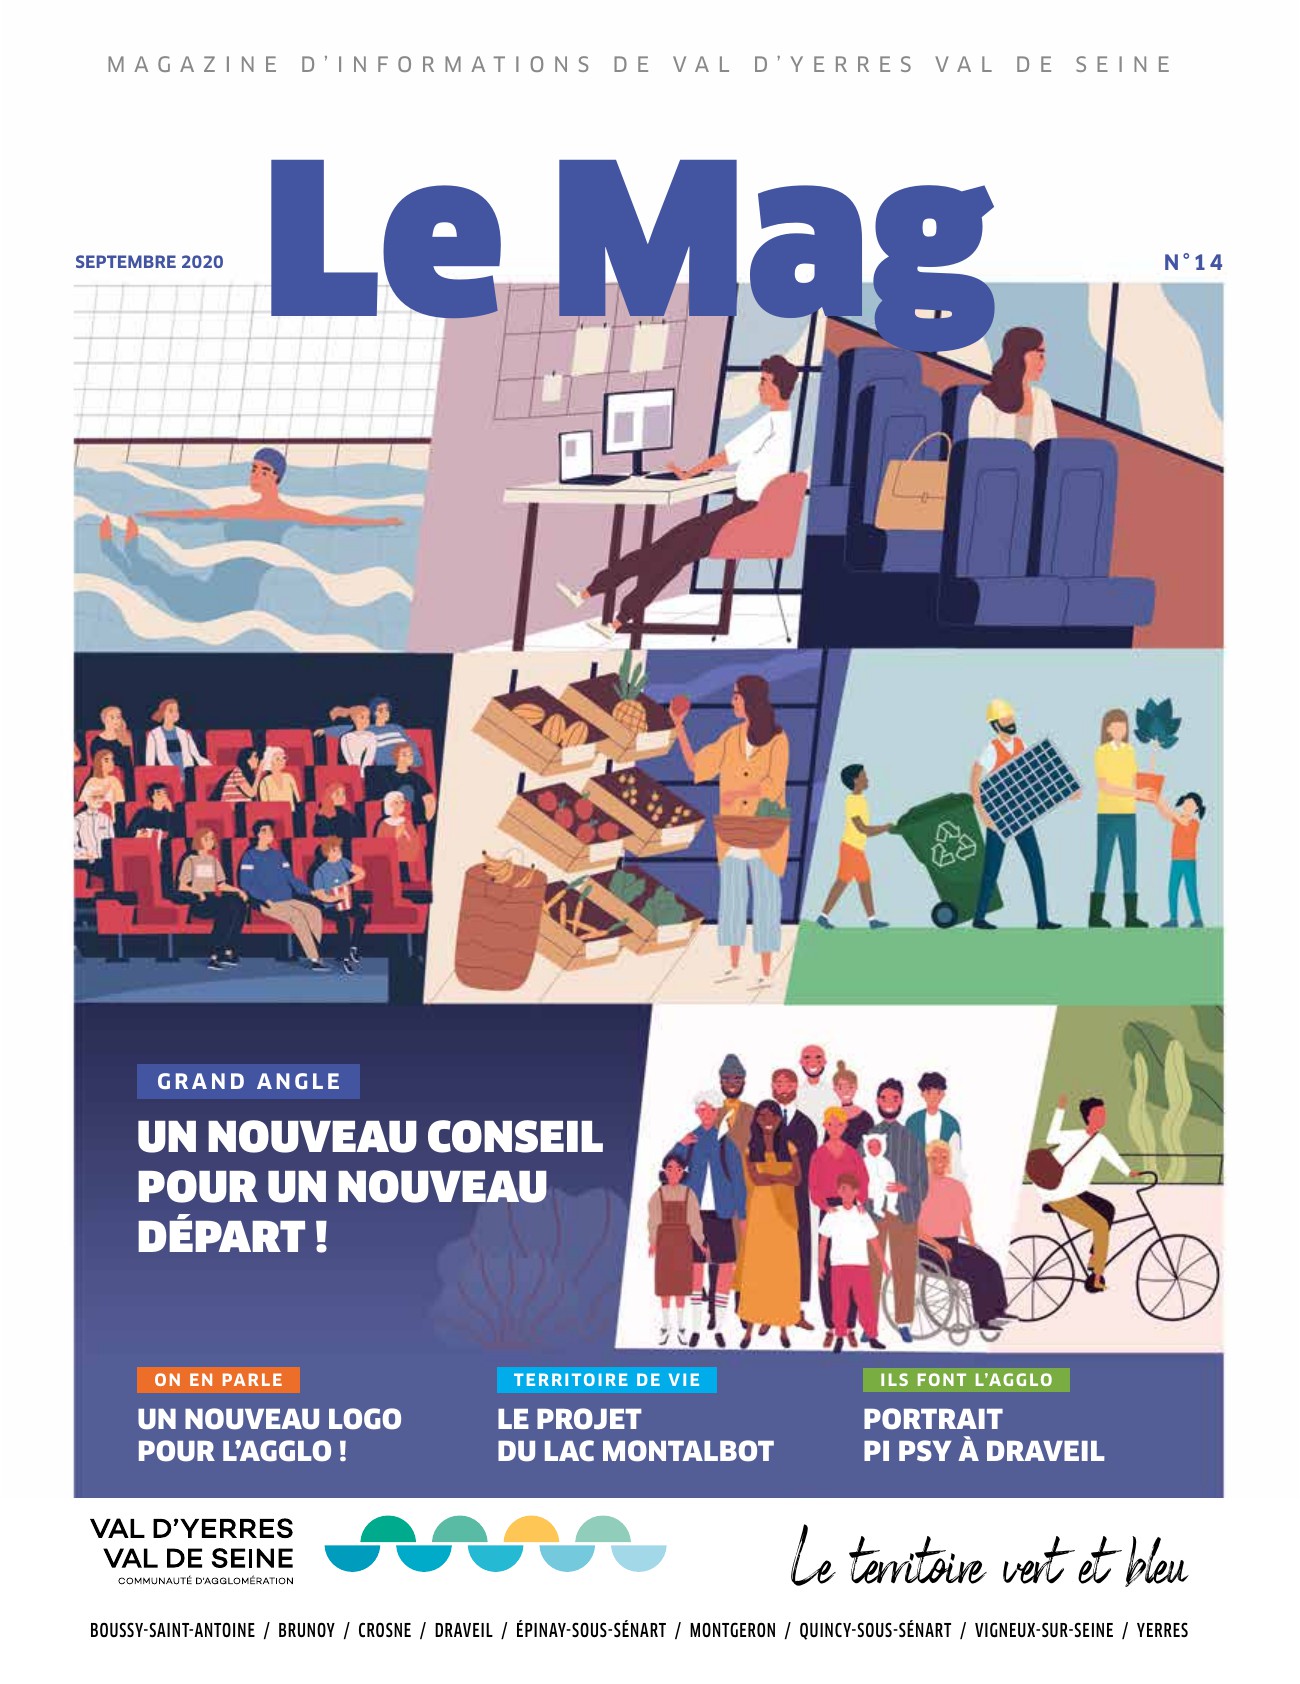 Magazine du Val d’Yerres Val de Seine septembre 2020